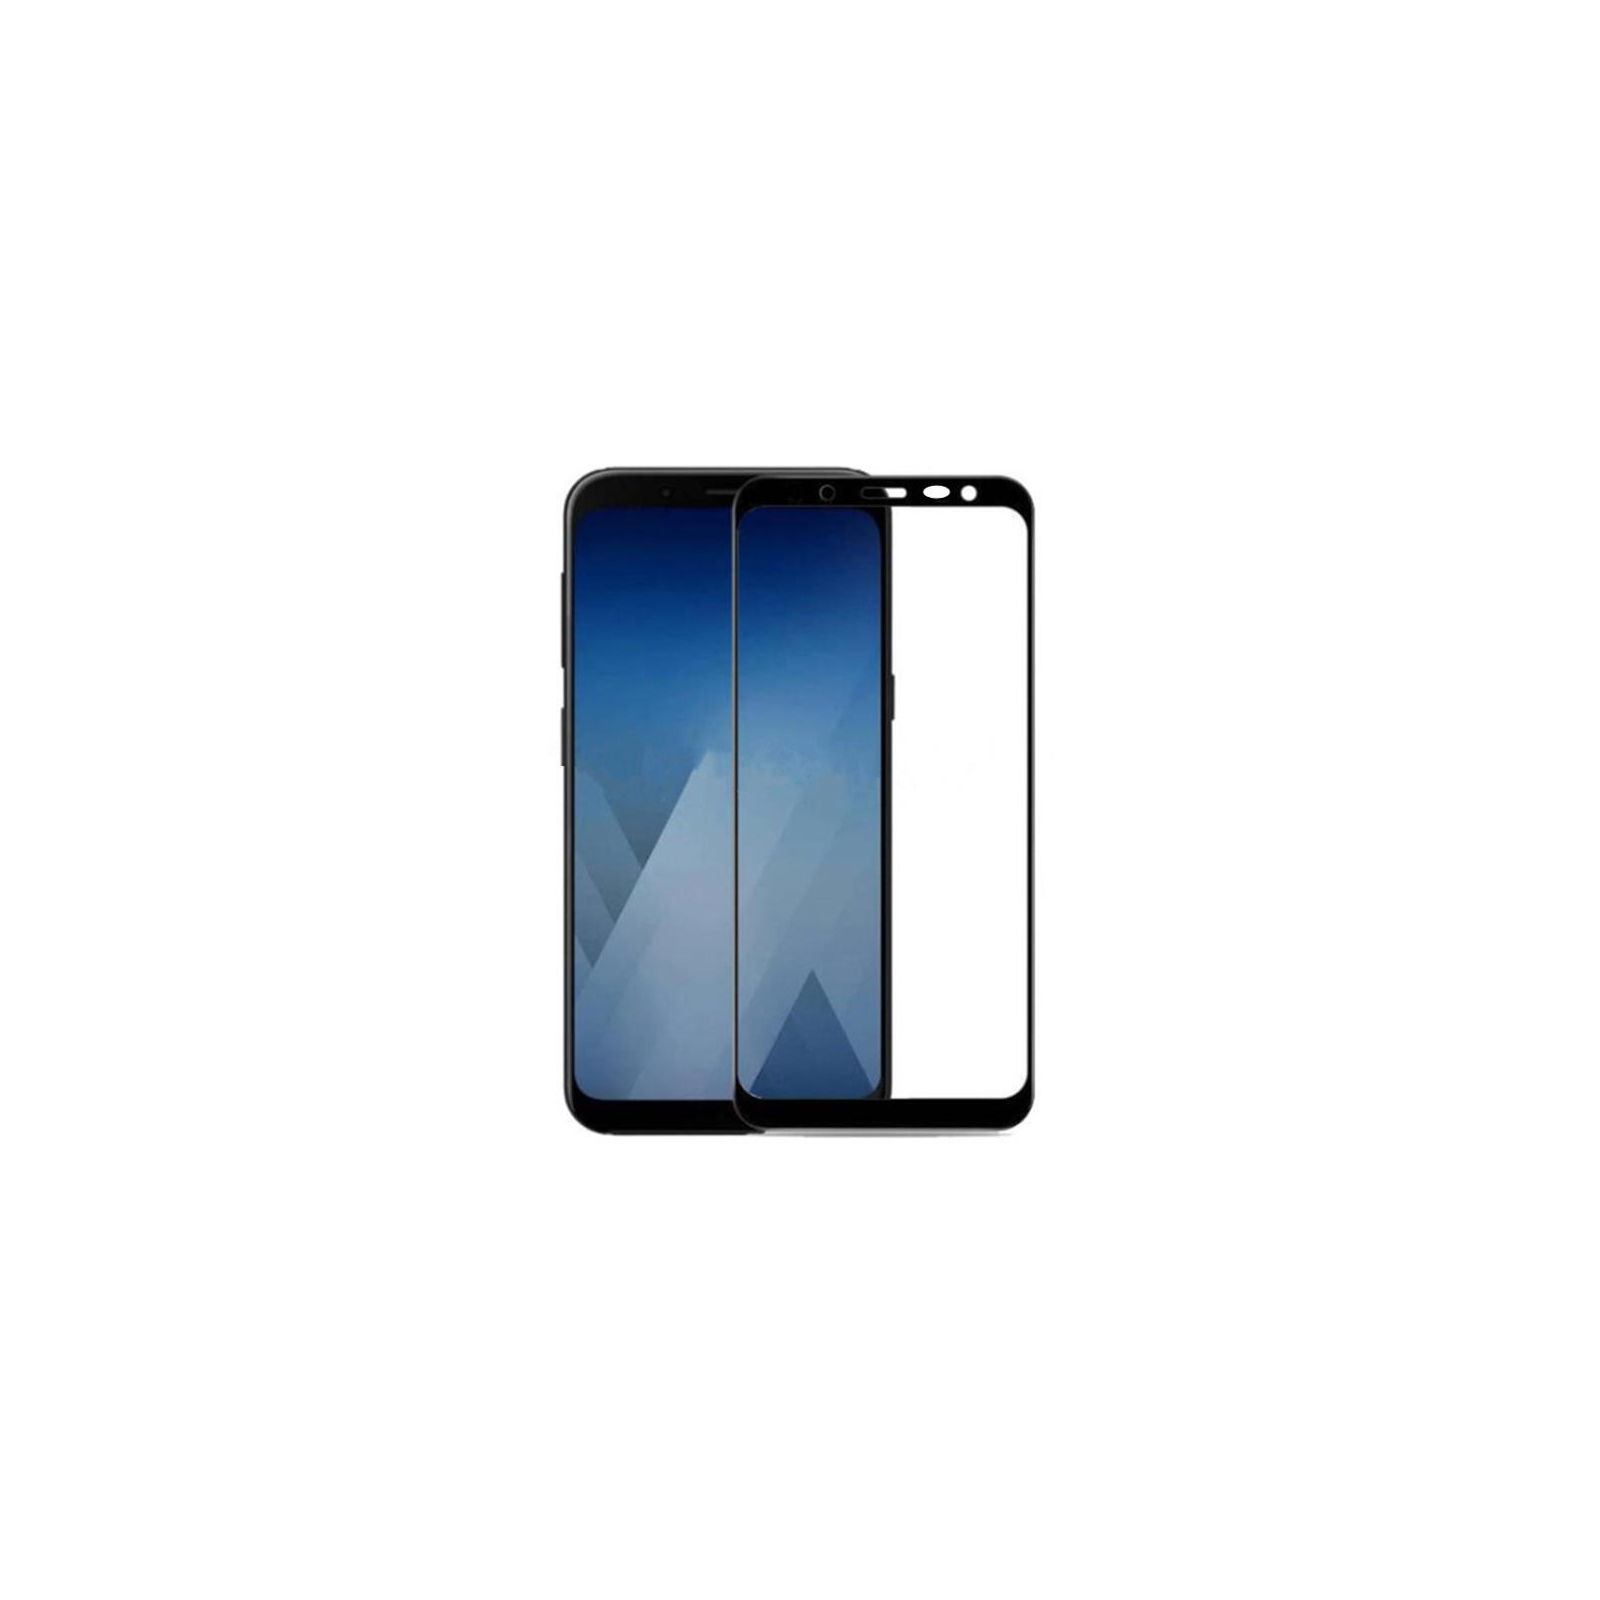 Стекло защитное Drobak для Samsung Galaxy J4 2018 Black 2.5D Full Cover (501607) изображение 2